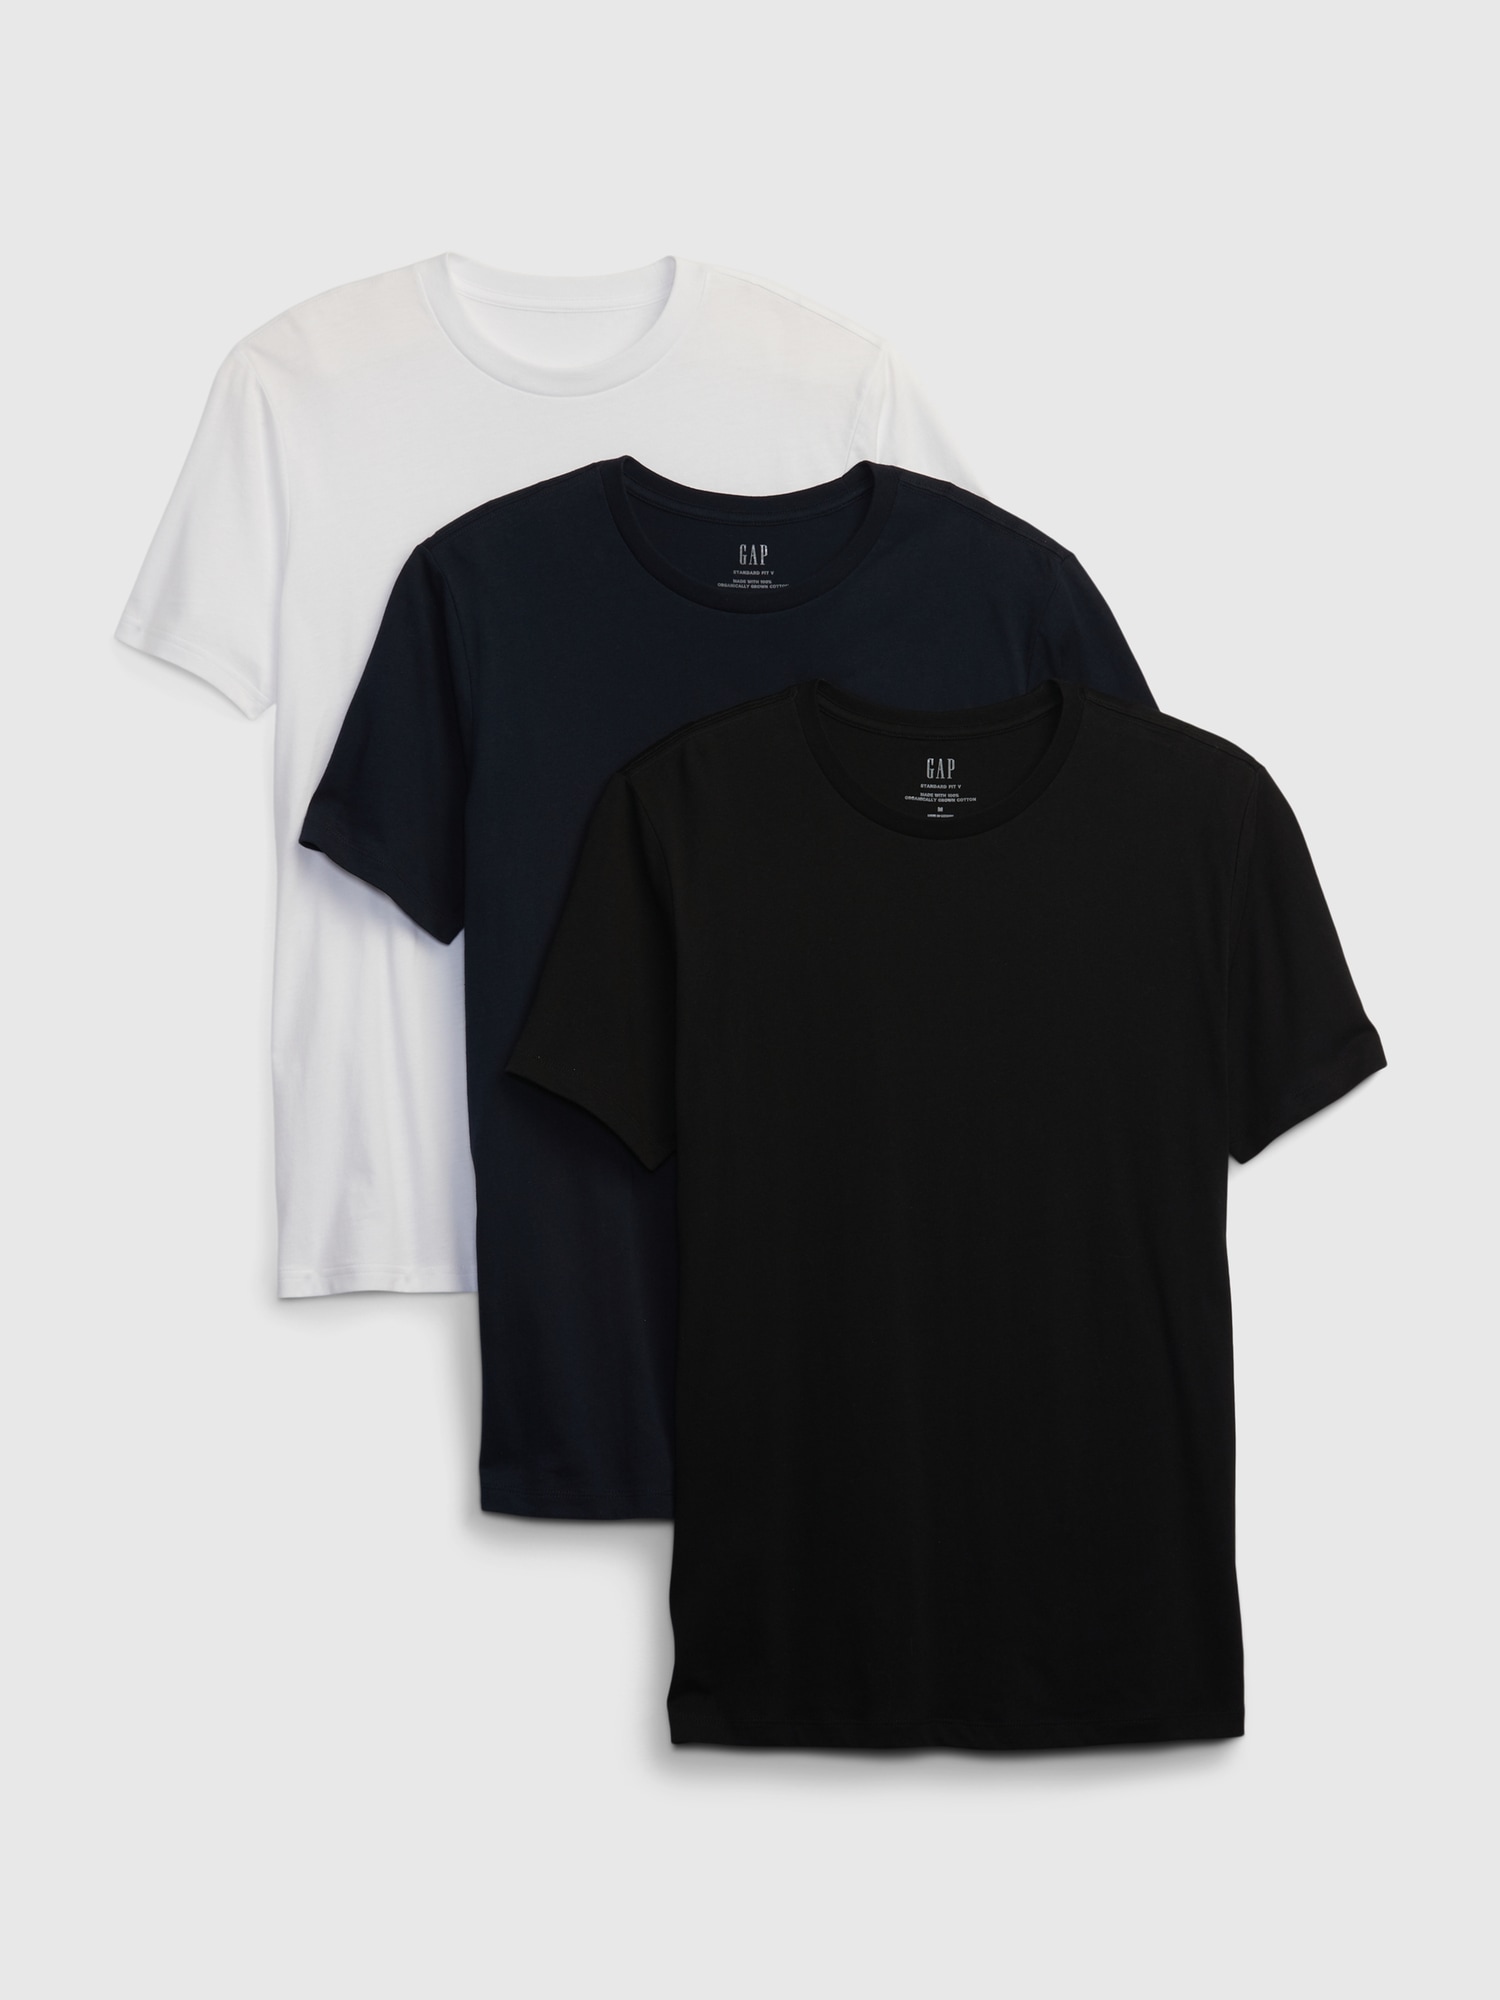 Cotton Slim Fit 3-Pack Crewneck T-Shirt